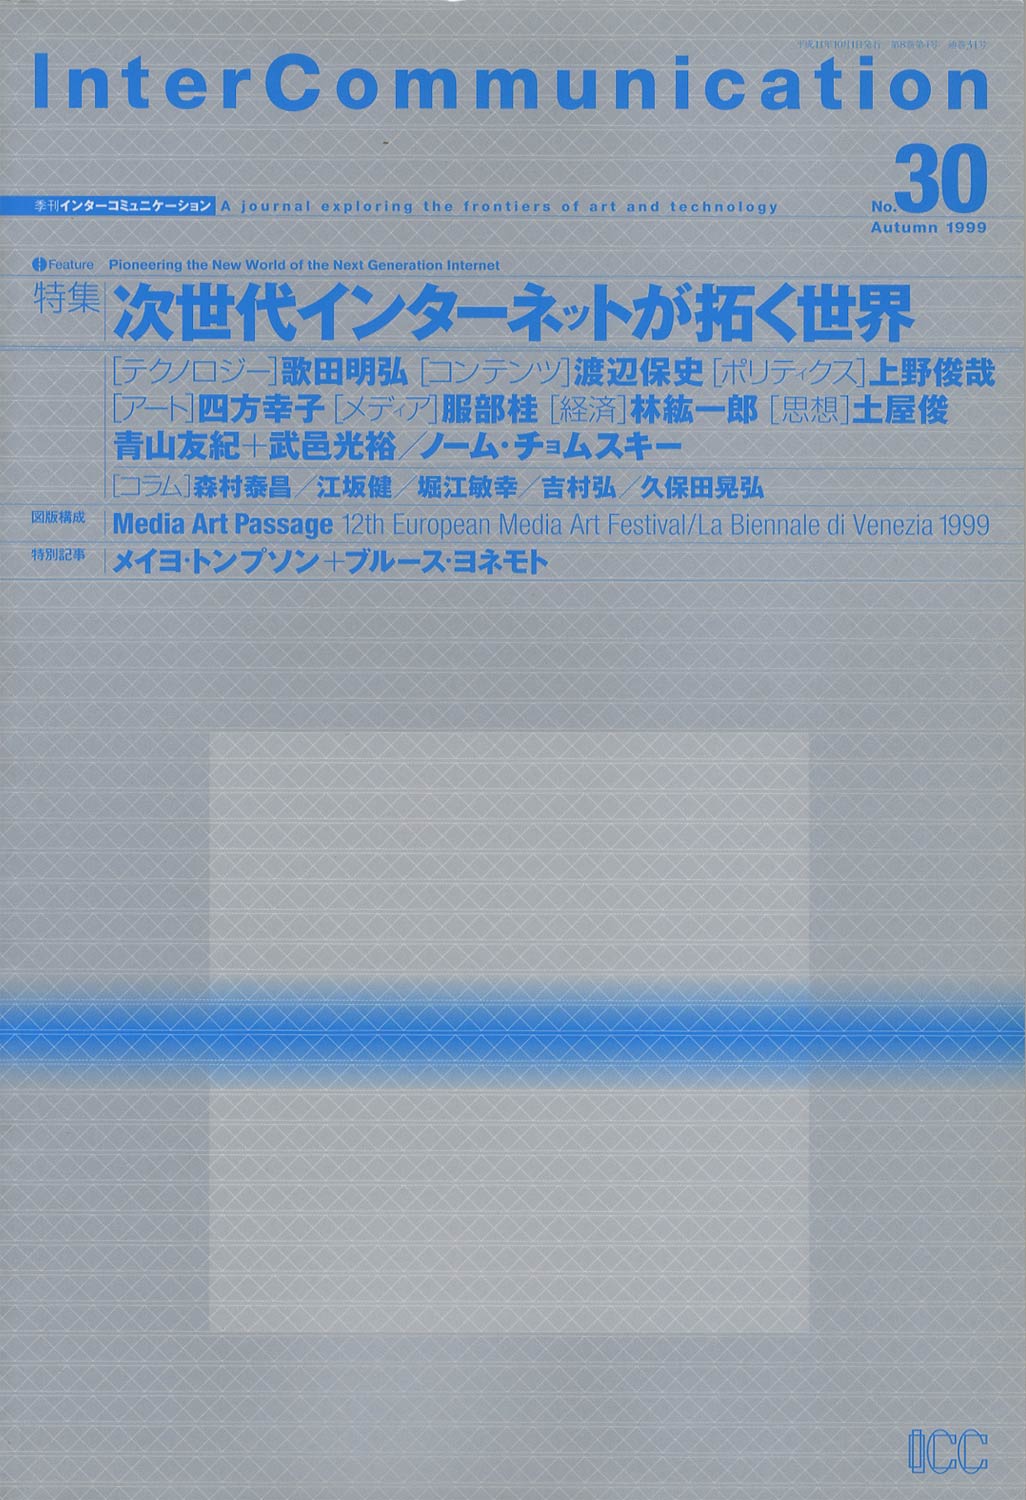 InterCommunication　季刊 インターコミュニケーション No.30 1999 Autimn